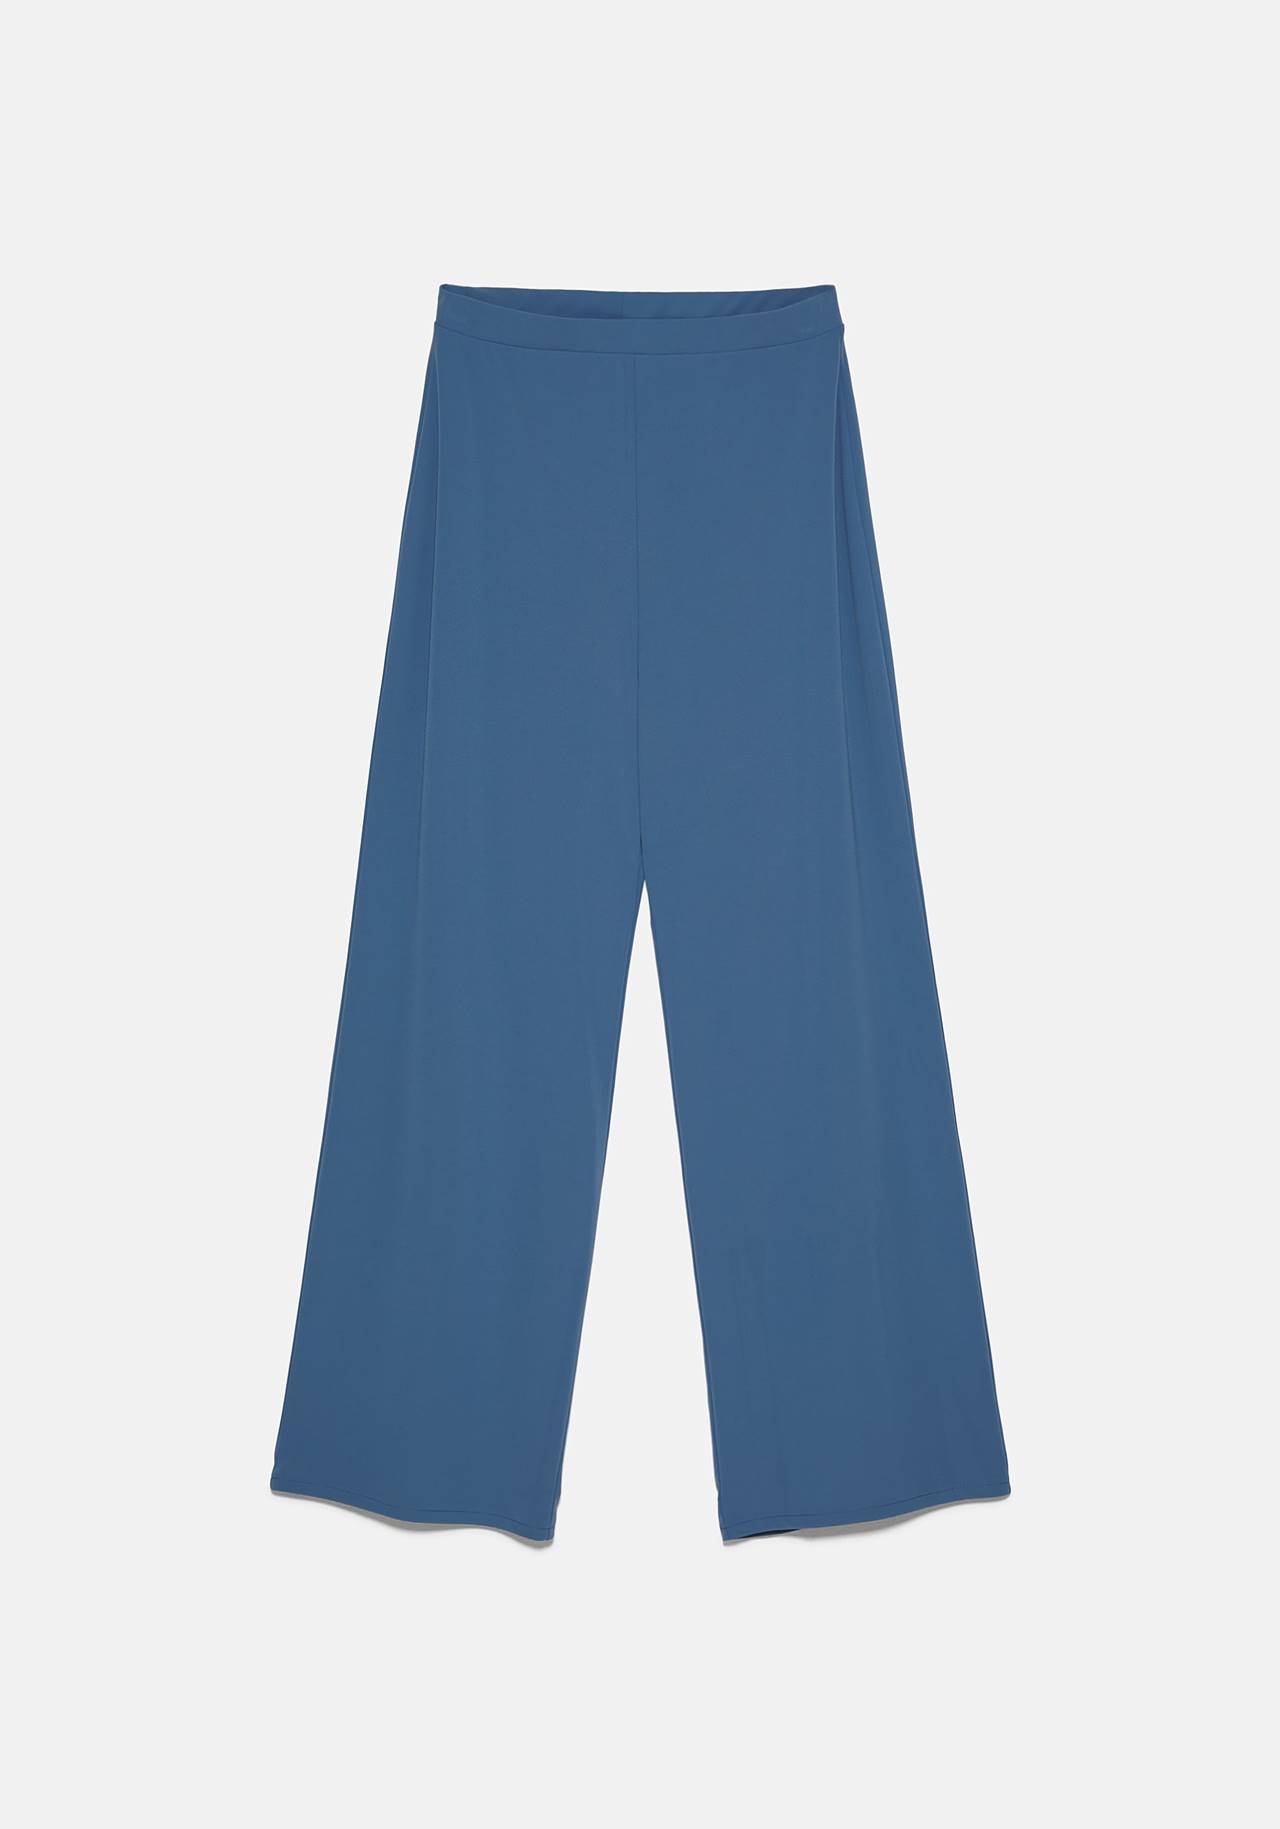 pantalones-azul